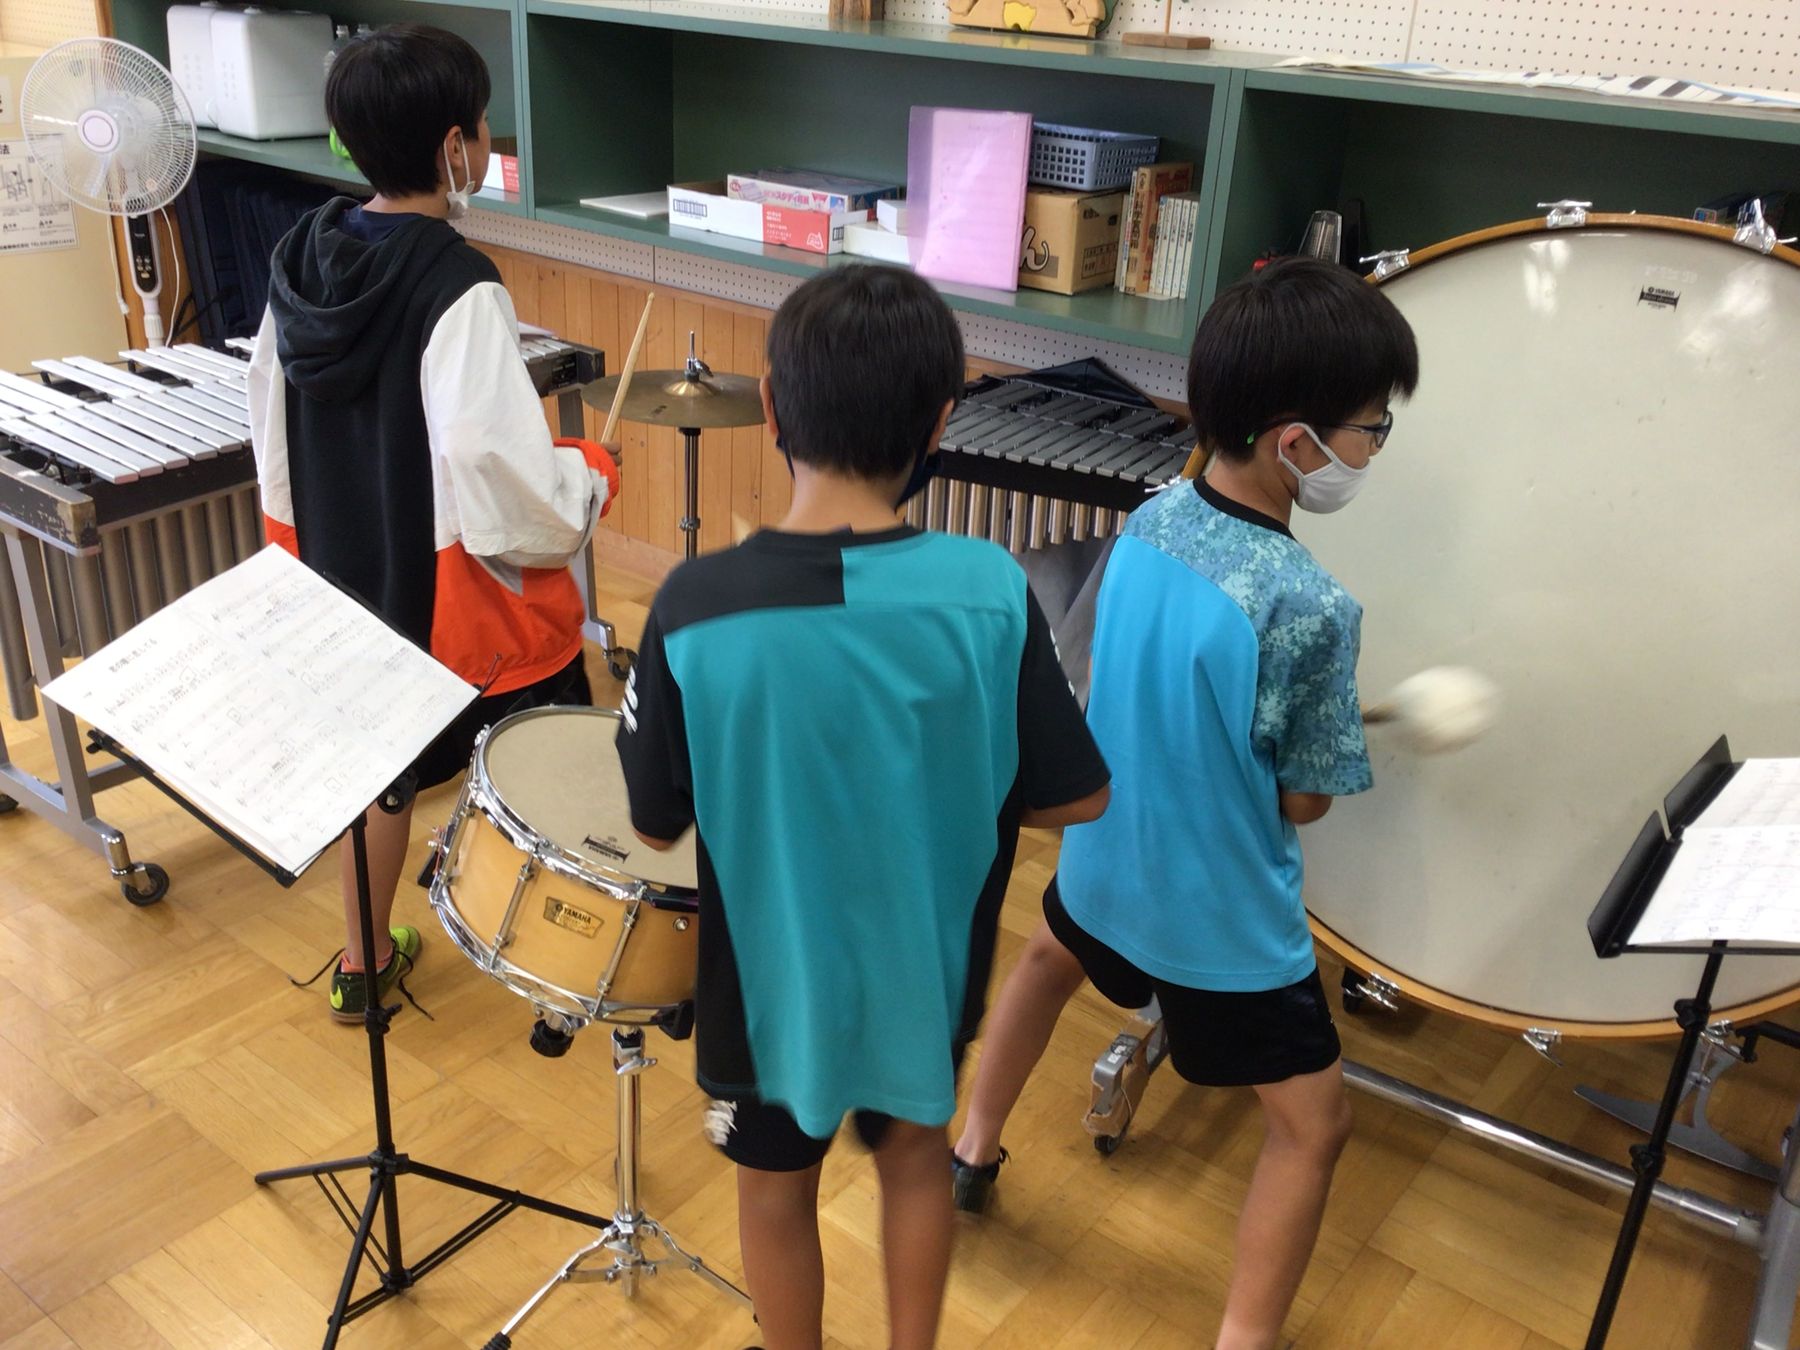 教室にある太鼓やシンバルなどの楽器を練習している、3人の男の子の写真